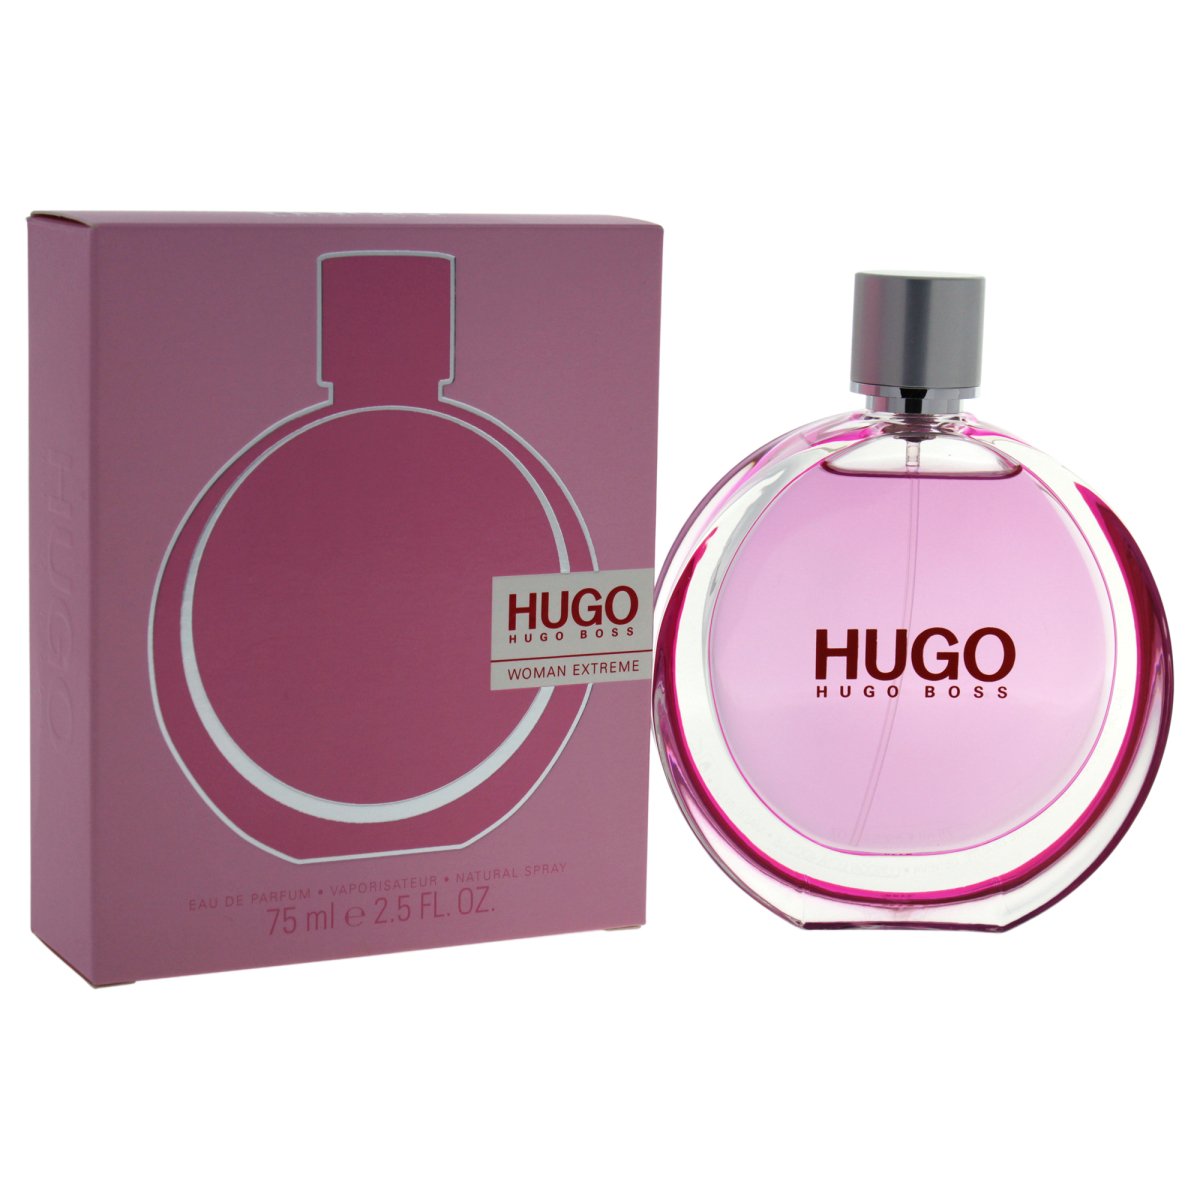 HUGO BOSS - Hugo Woman Extreme para mujer / 75 ml Eau De Parfum Spray